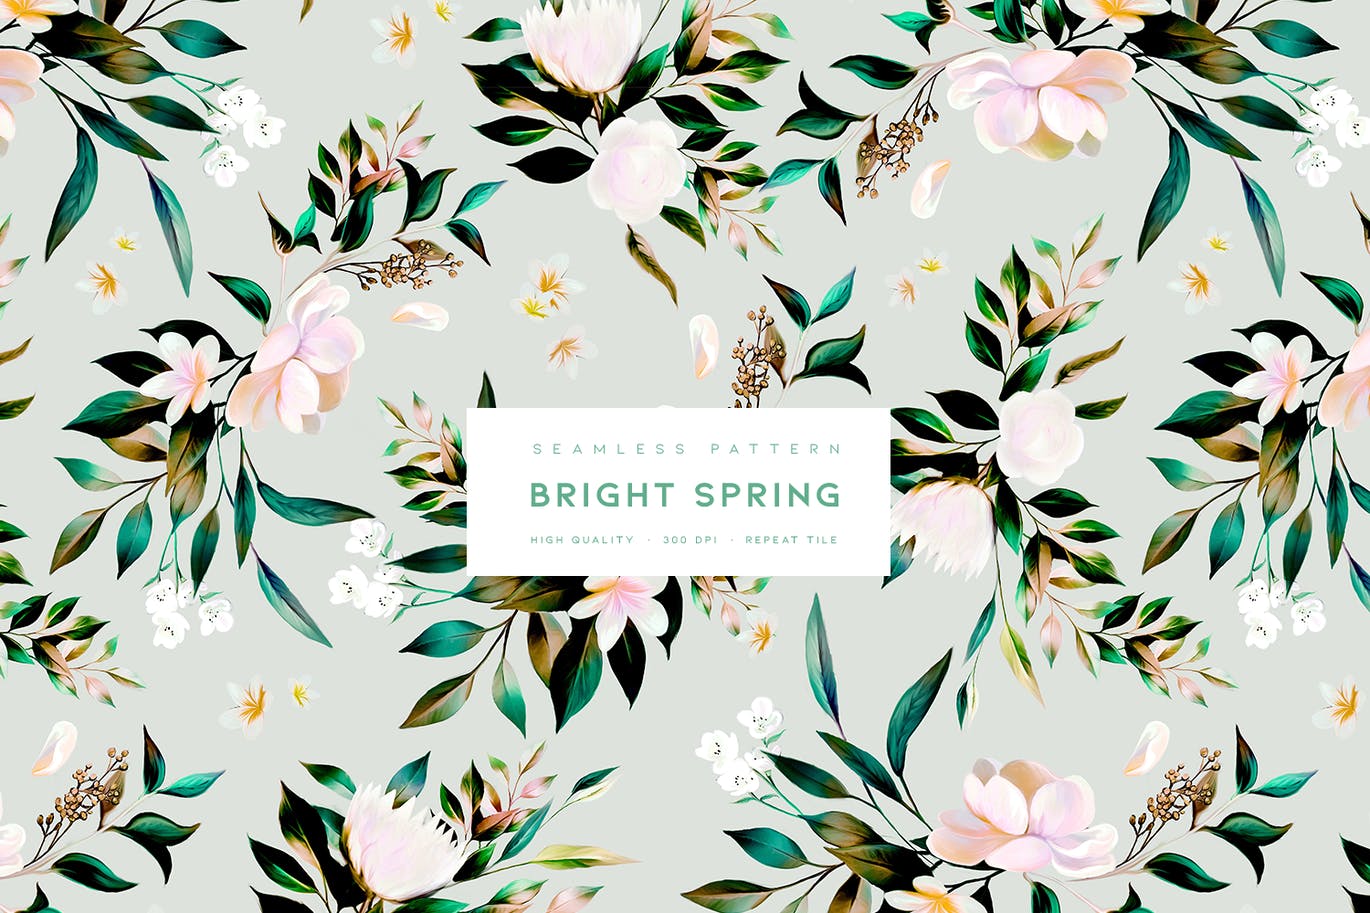 明媚的春天花朵无缝图案素材 Bright Spring 图片素材 第1张